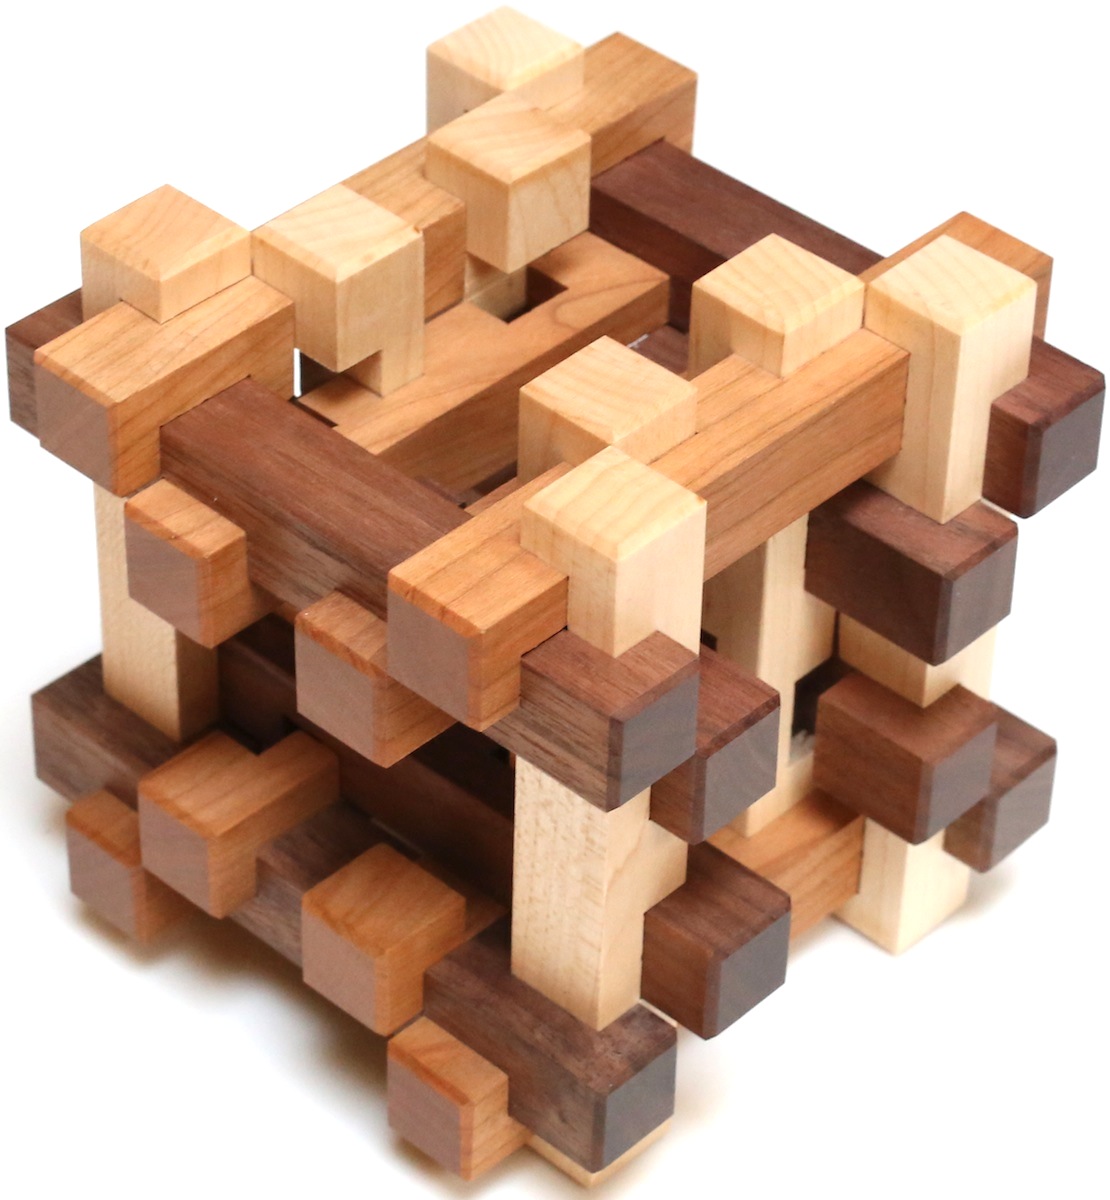 Вуд пазл. Головоломка Burr Puzzle. Деревянный головоломка Burr Puzzle. Деревянная головоломка куб. Вуден пазл.